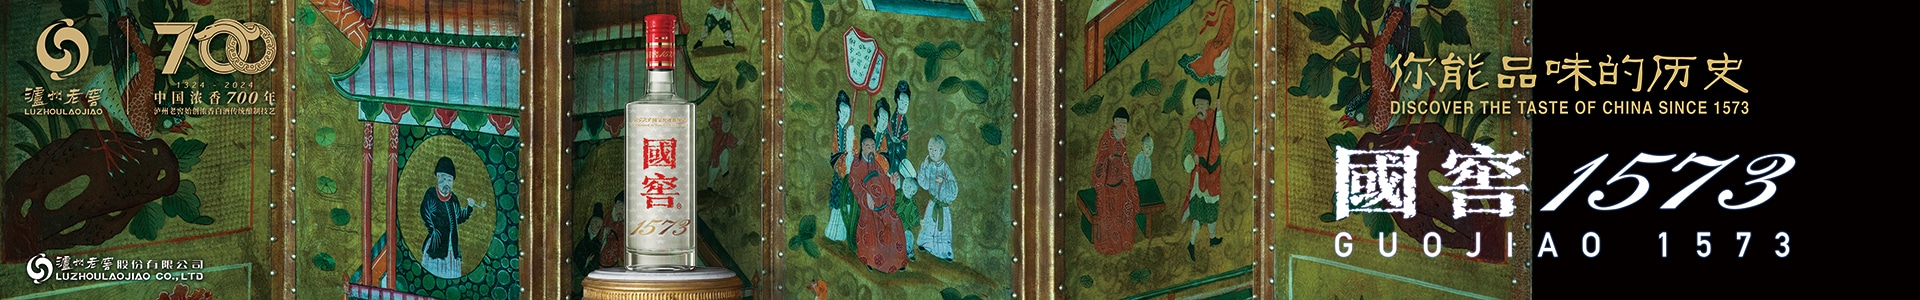 Luzhou Laojiao · Guojiao 1573